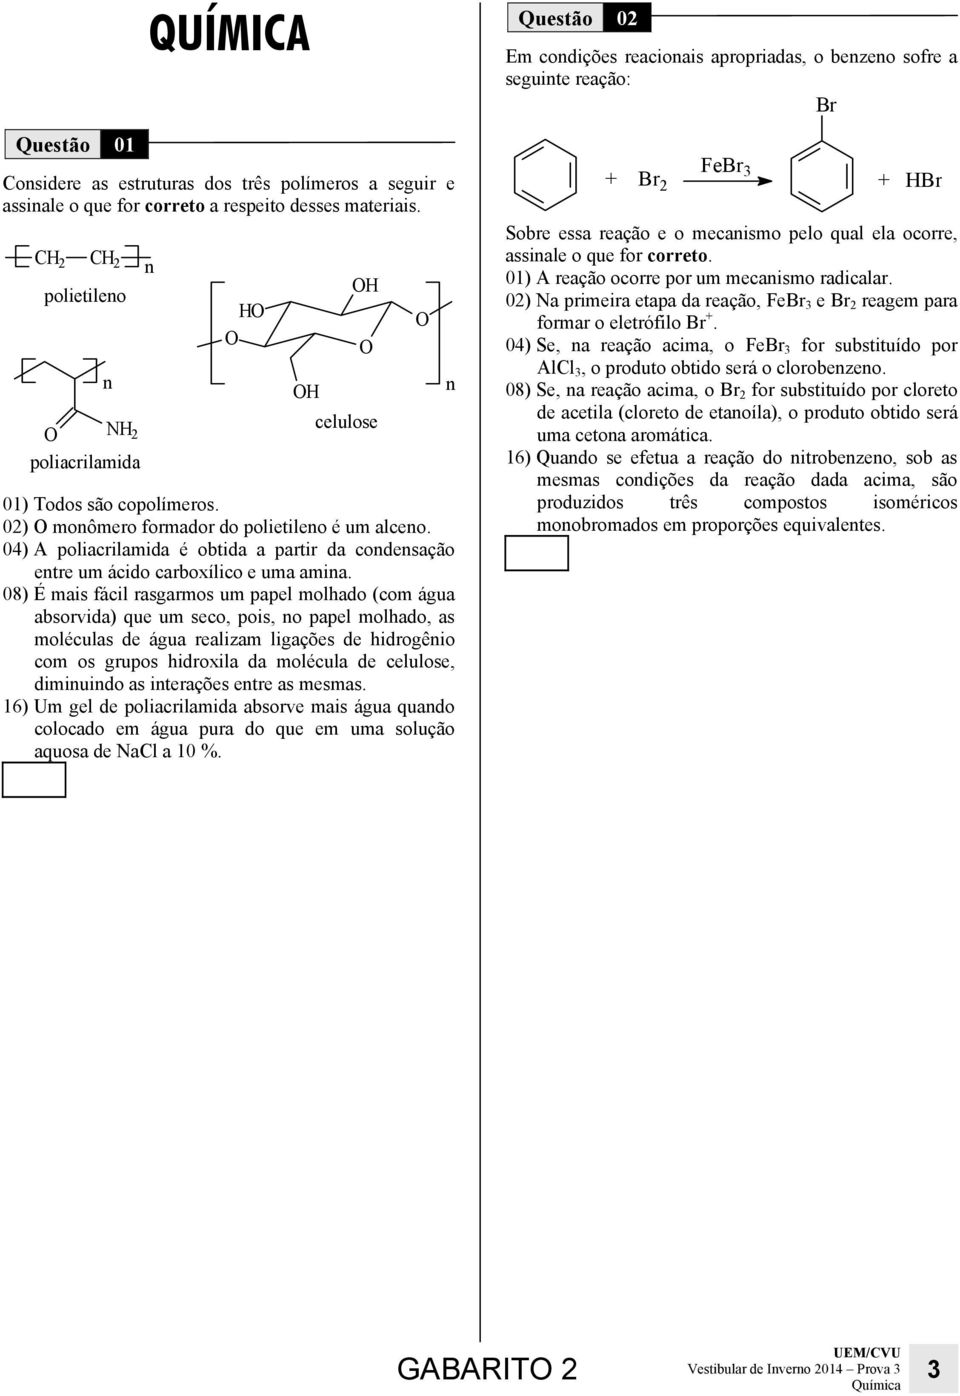 04) A poliacrilamida é obtida a partir da condensação entre um ácido carboxílico e uma amina.